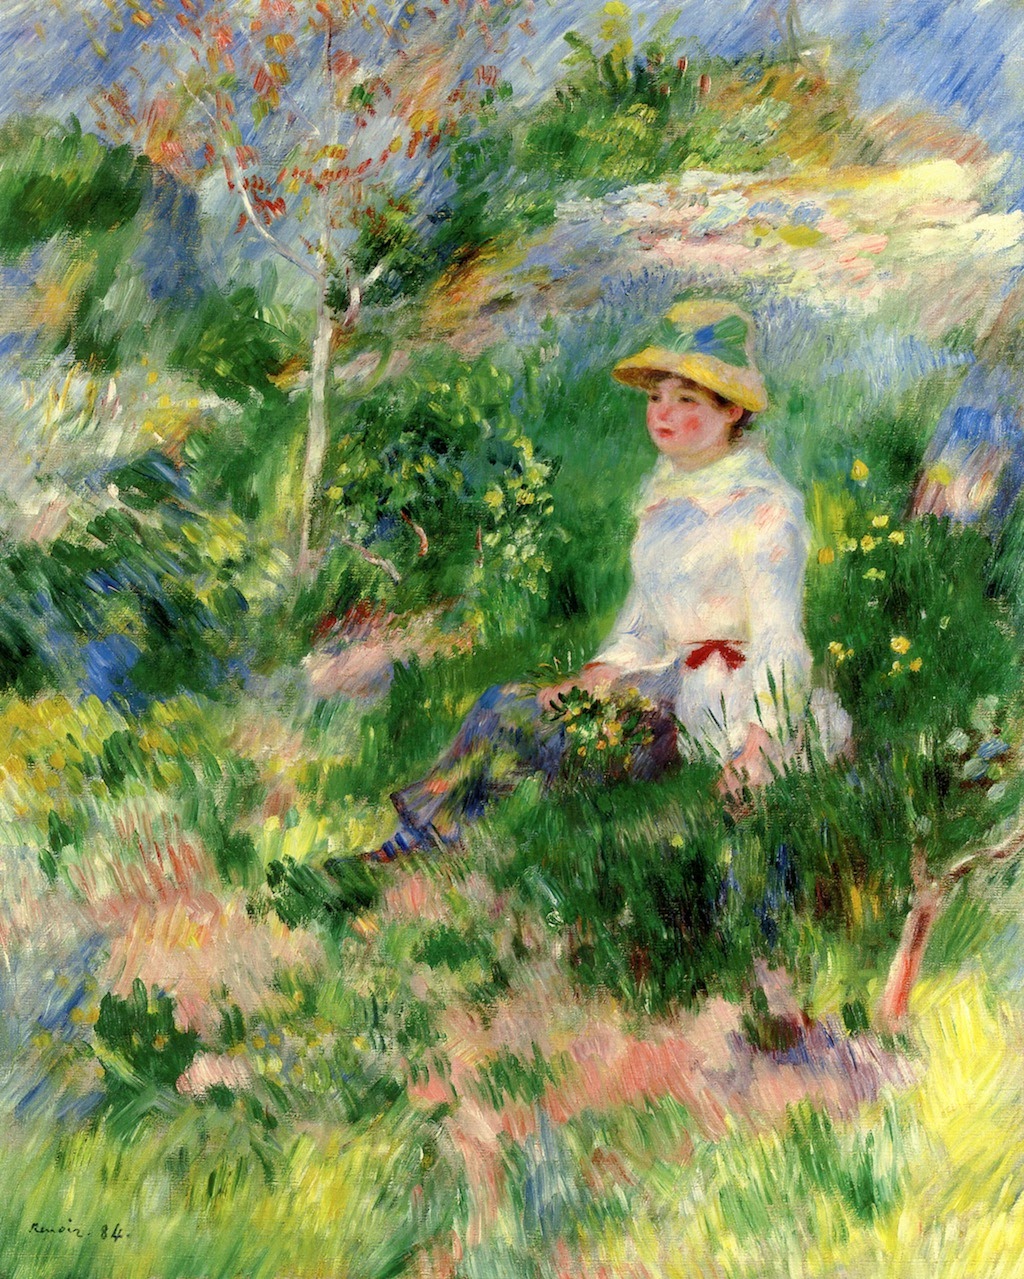 Pierre+Auguste+Renoir-1841-1-19 (510).jpg